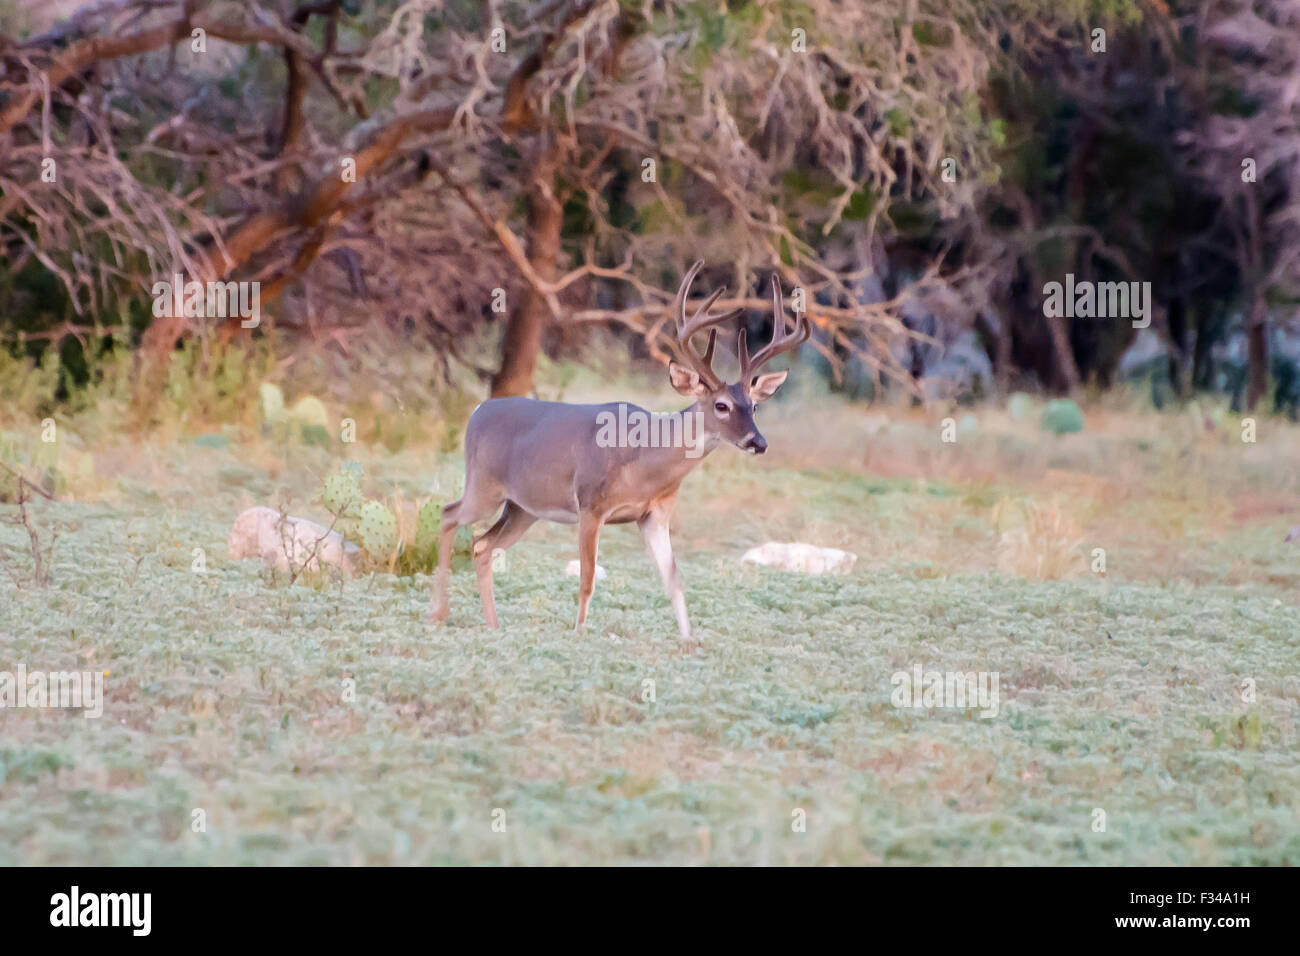 South Texas Whitetail buck in velvet before hunting season Stock Photo